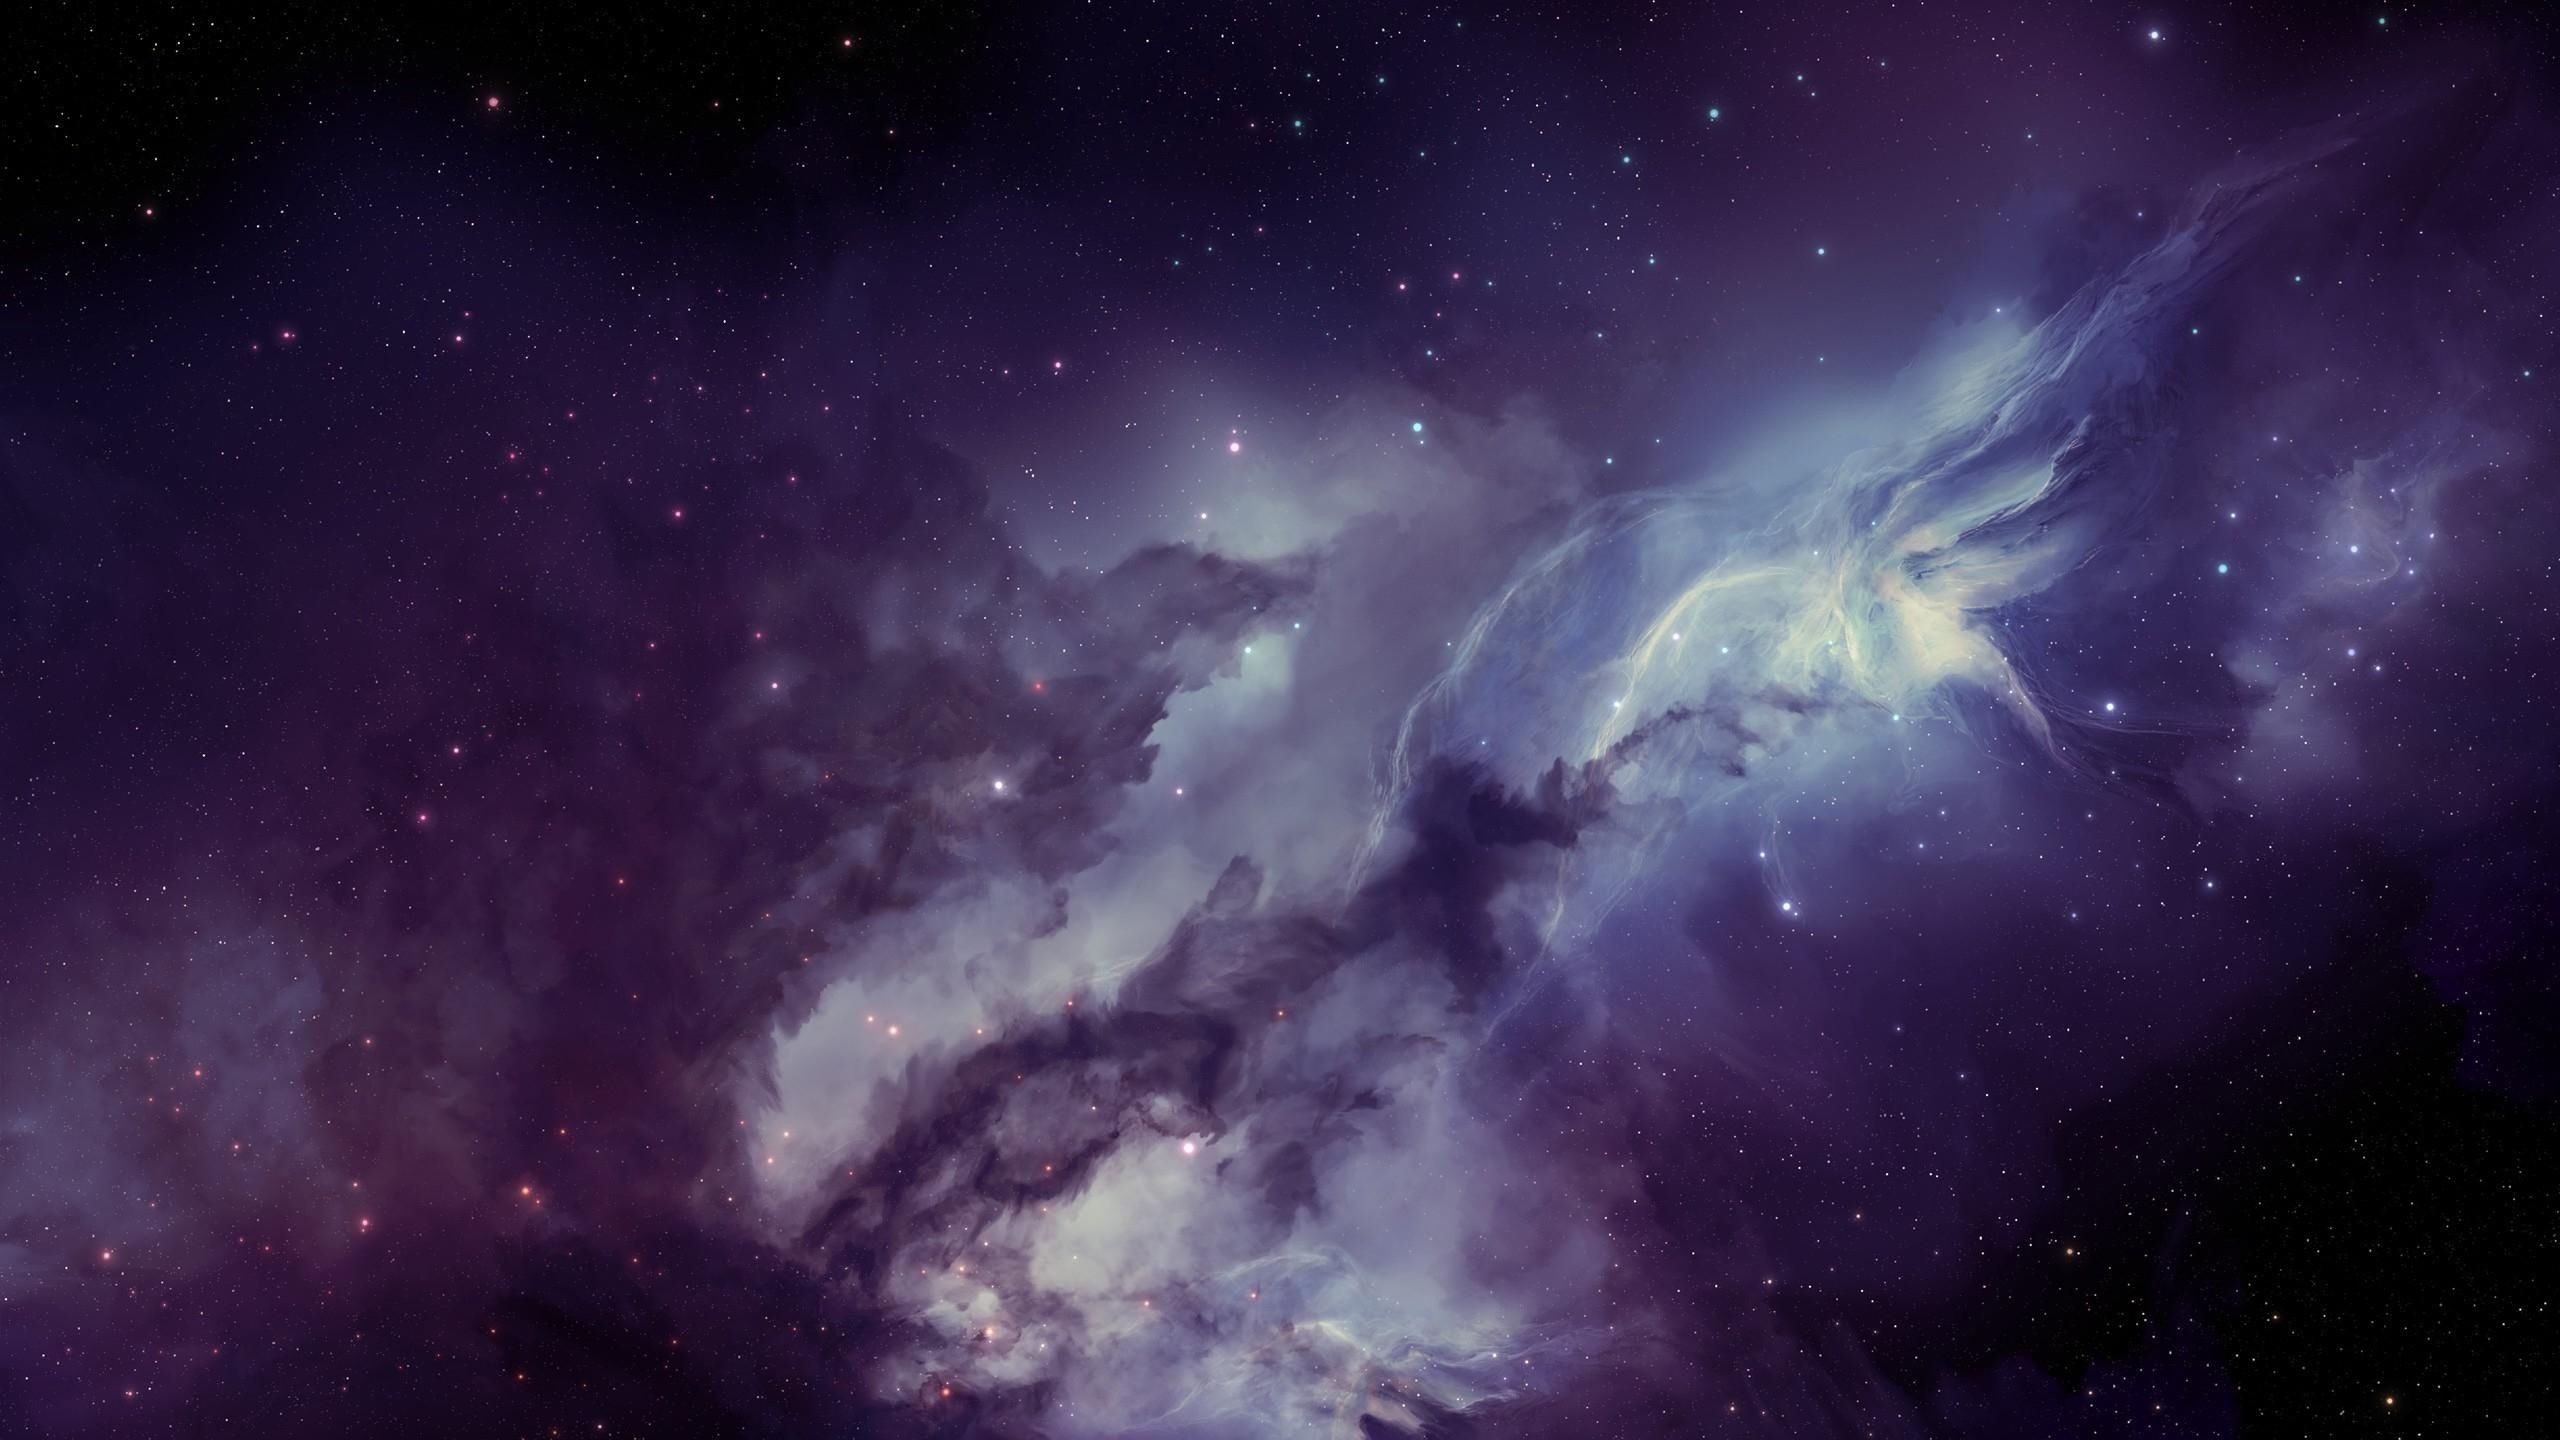 Download Wallpaper 2560x1440 Galaxy, Nebula, Blurring, Stars Mac iMac 27 HD Background. 배경화면, 배경, 표지